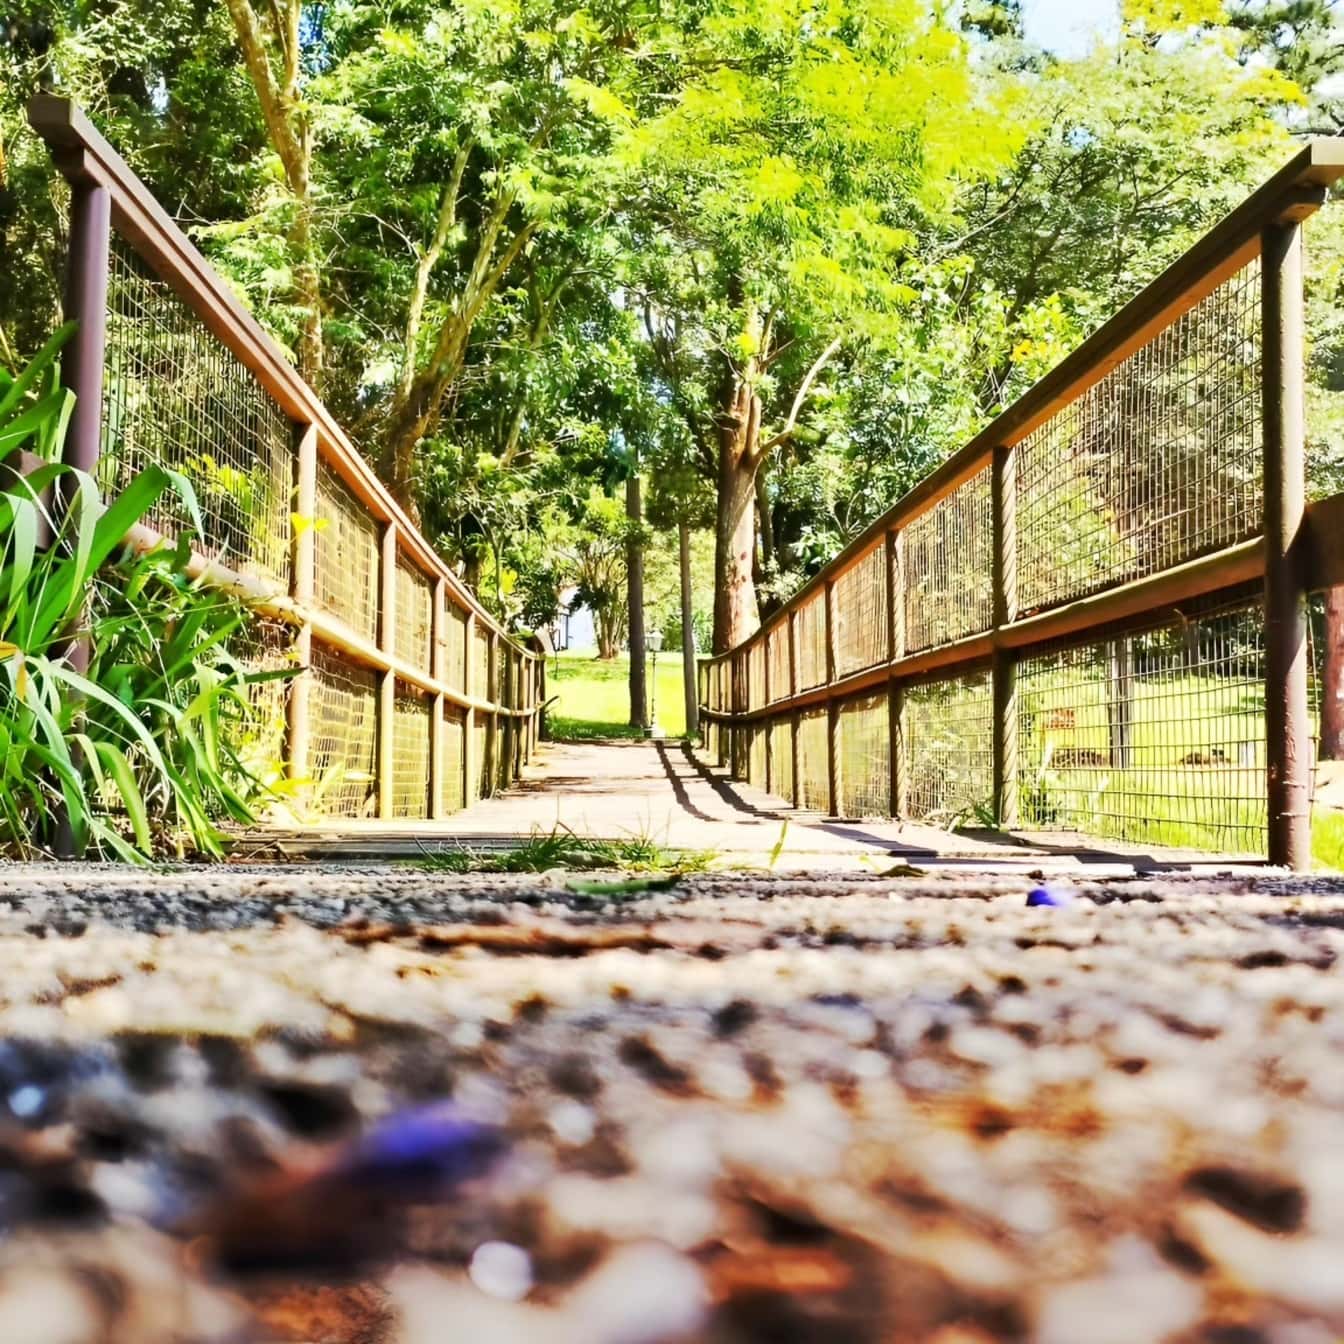 En vej til fodgængerbro af træ med hegn i botanisk park